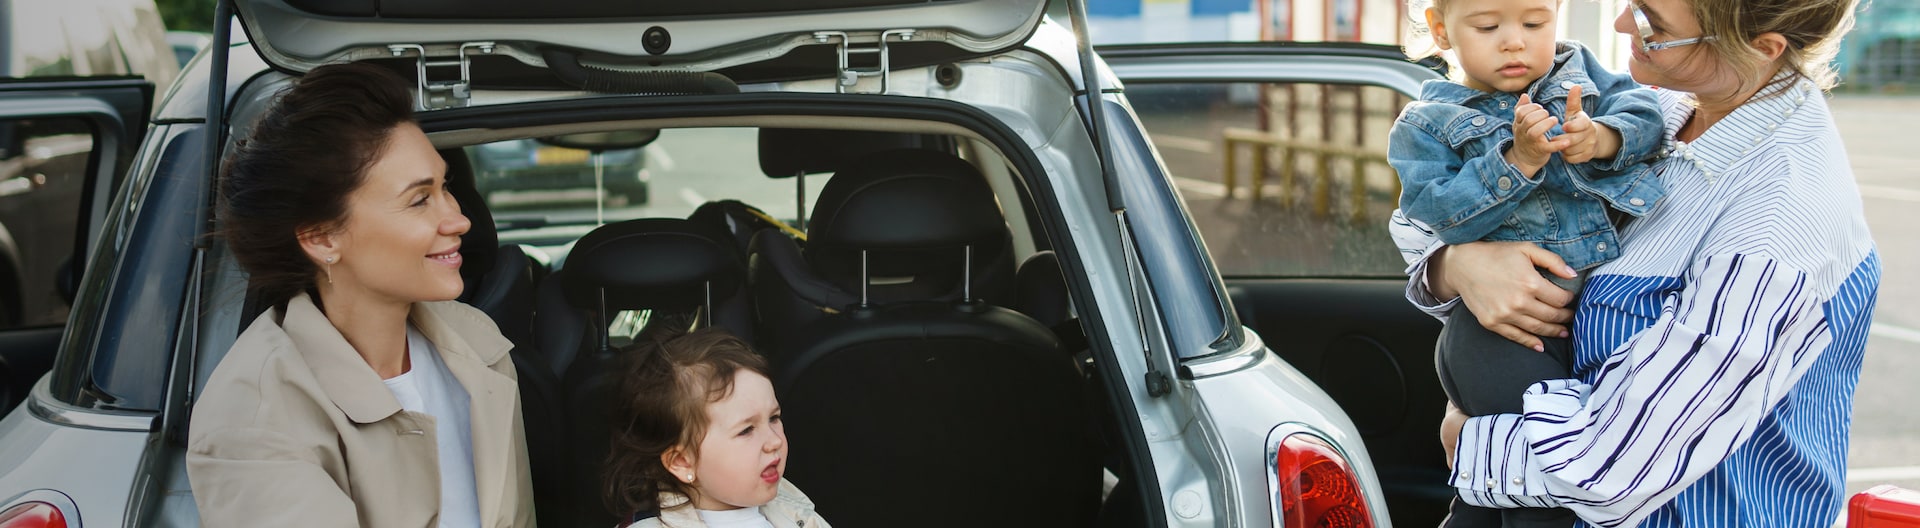 Två vuxna och två barn konverserar vid en bils bagageutrymme